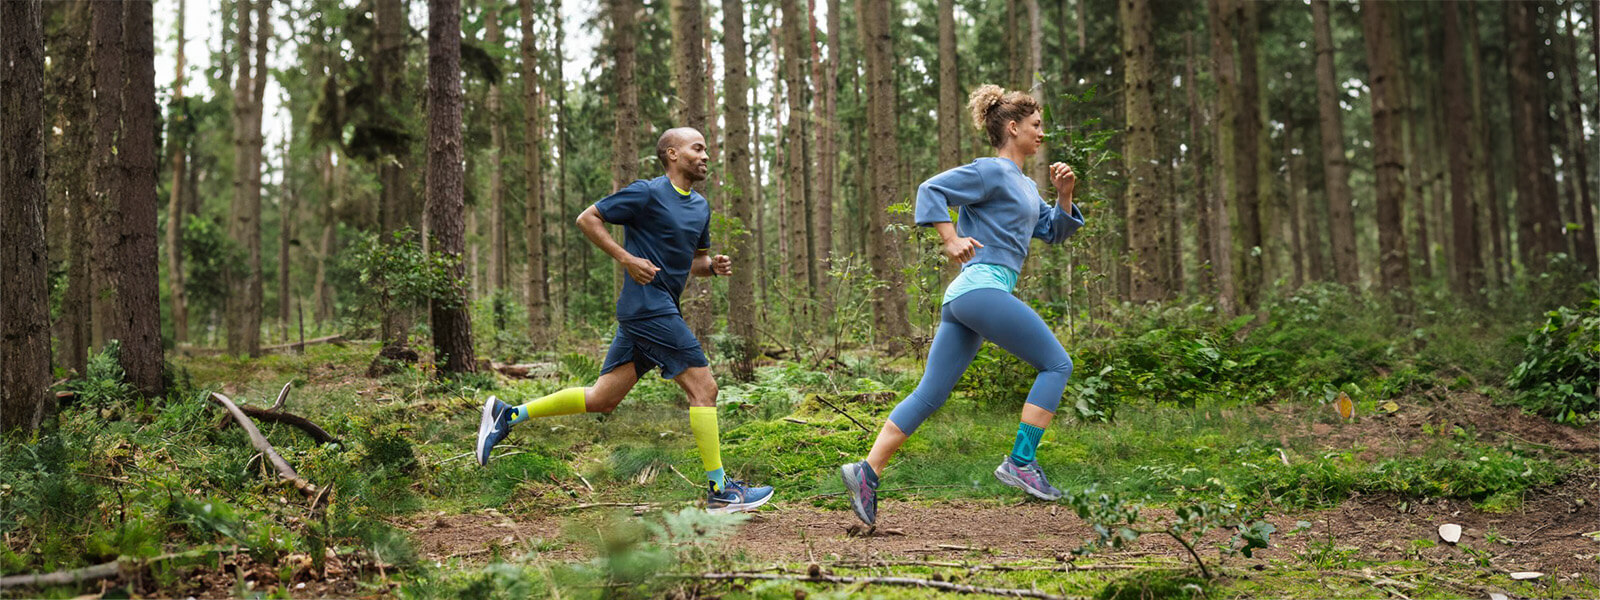 Eine Frau und ein Mann rennen durch einen dichten Wald und tragen Bandagen